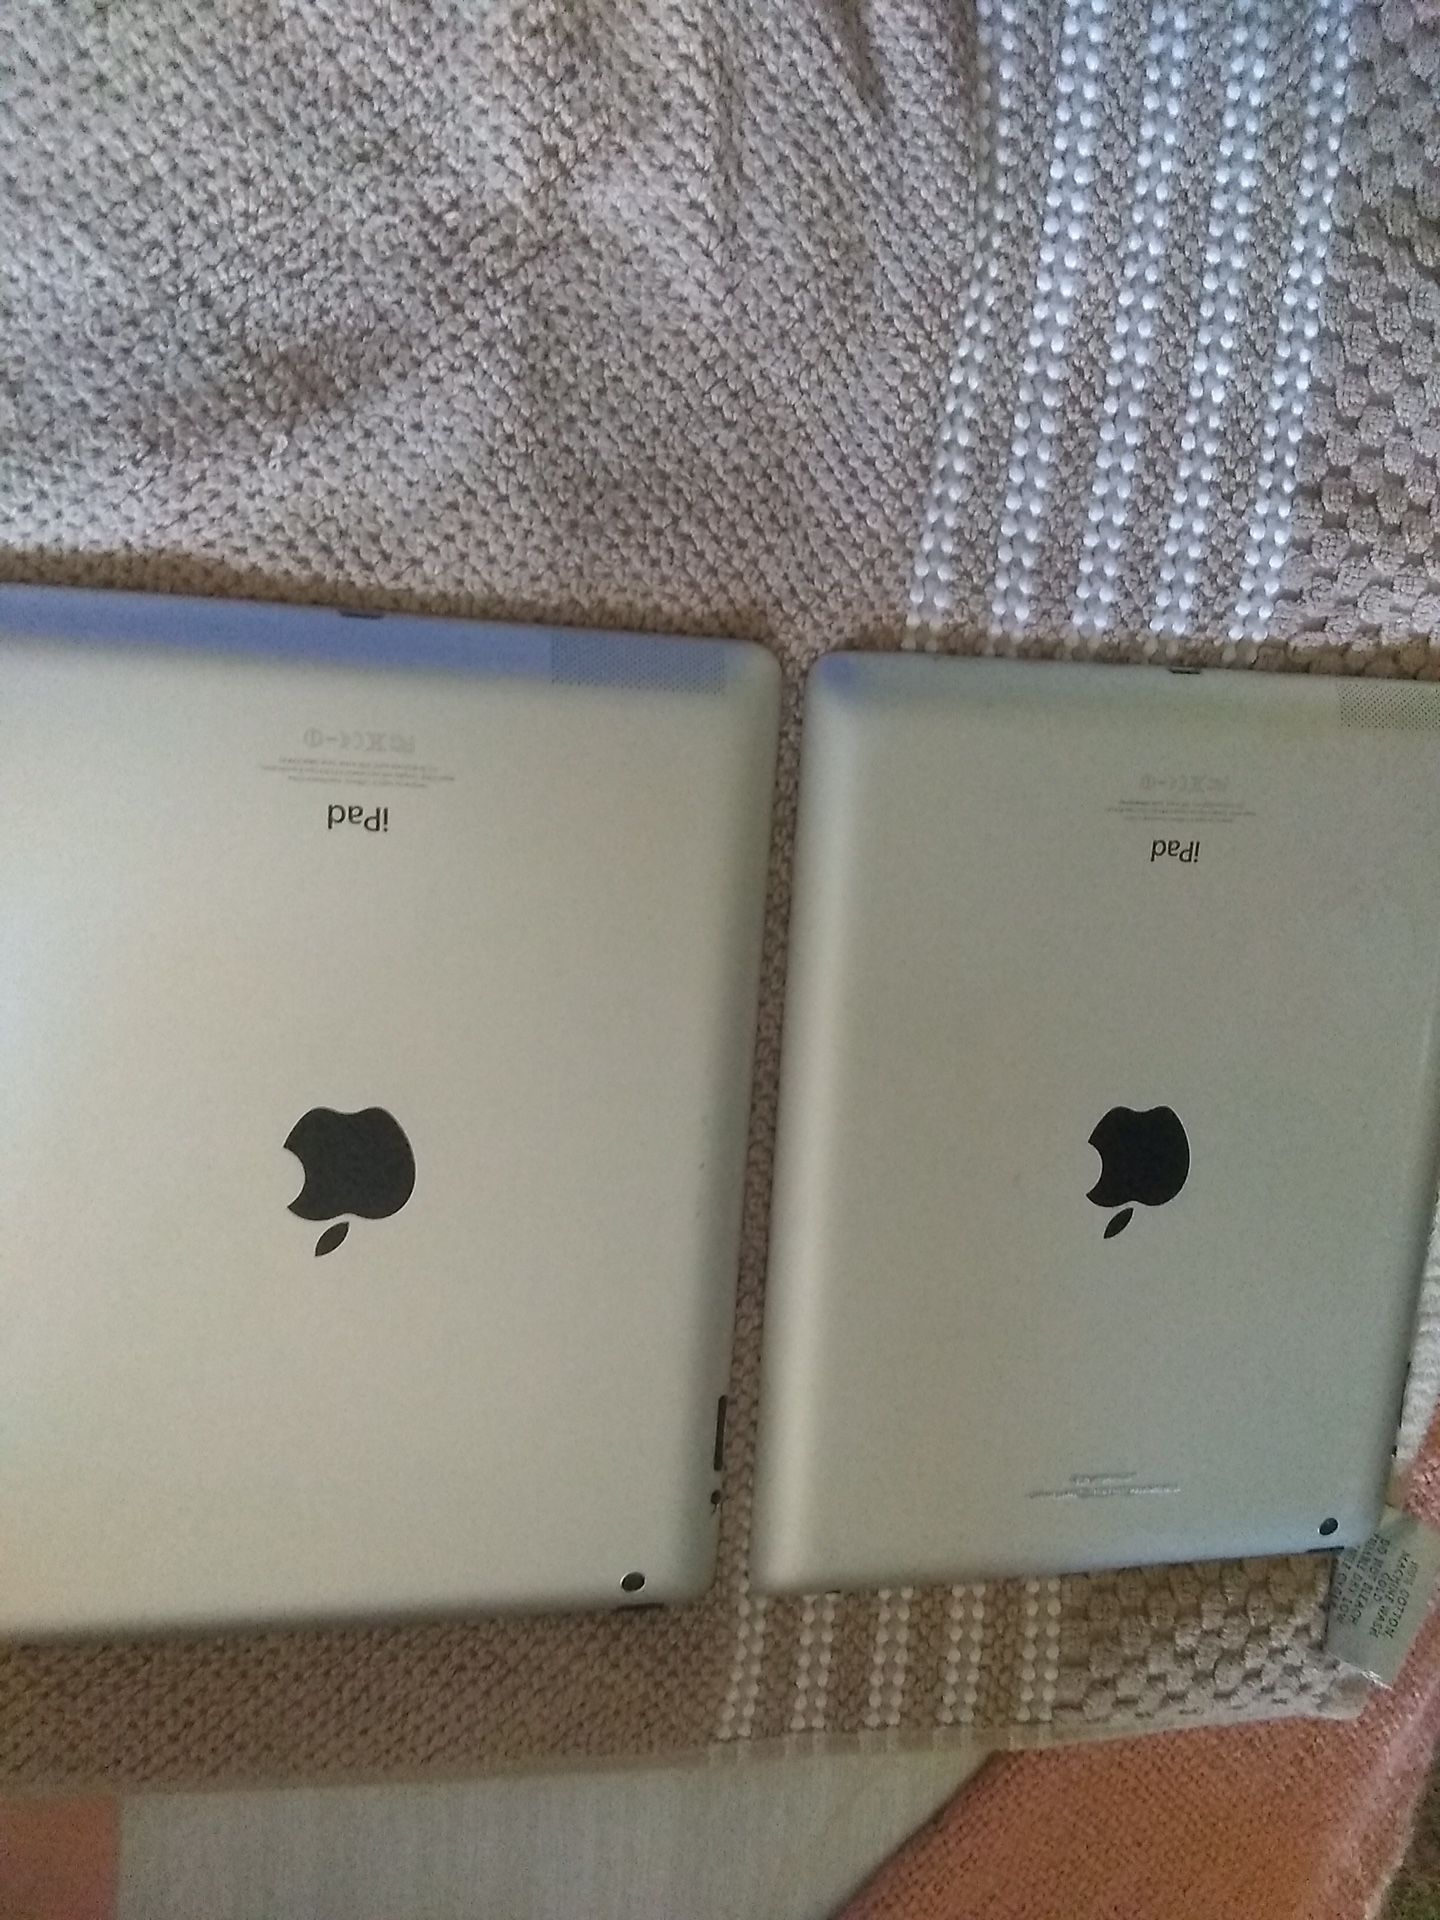 (2) iPad 2 $150 (2) iPad 4 $275